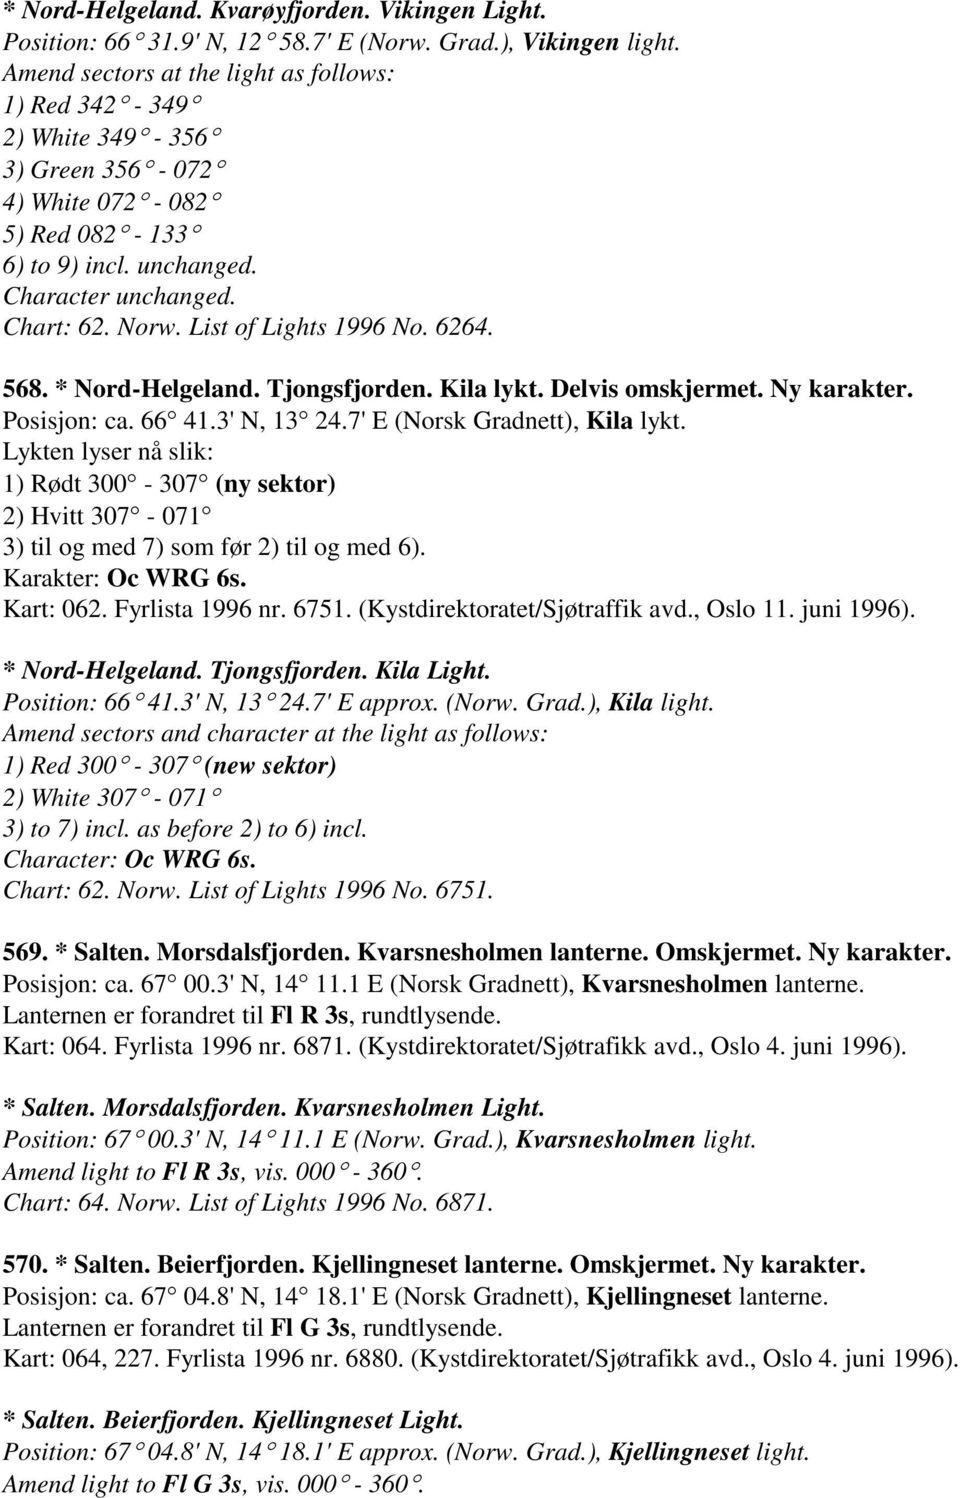 List of Lights 1996 No. 6264. 568. * Nord-Helgeland. Tjongsfjorden. Kila lykt. Delvis omskjermet. Ny karakter. Posisjon: ca. 66 41.3' N, 13 24.7' E (Norsk Gradnett), Kila lykt.